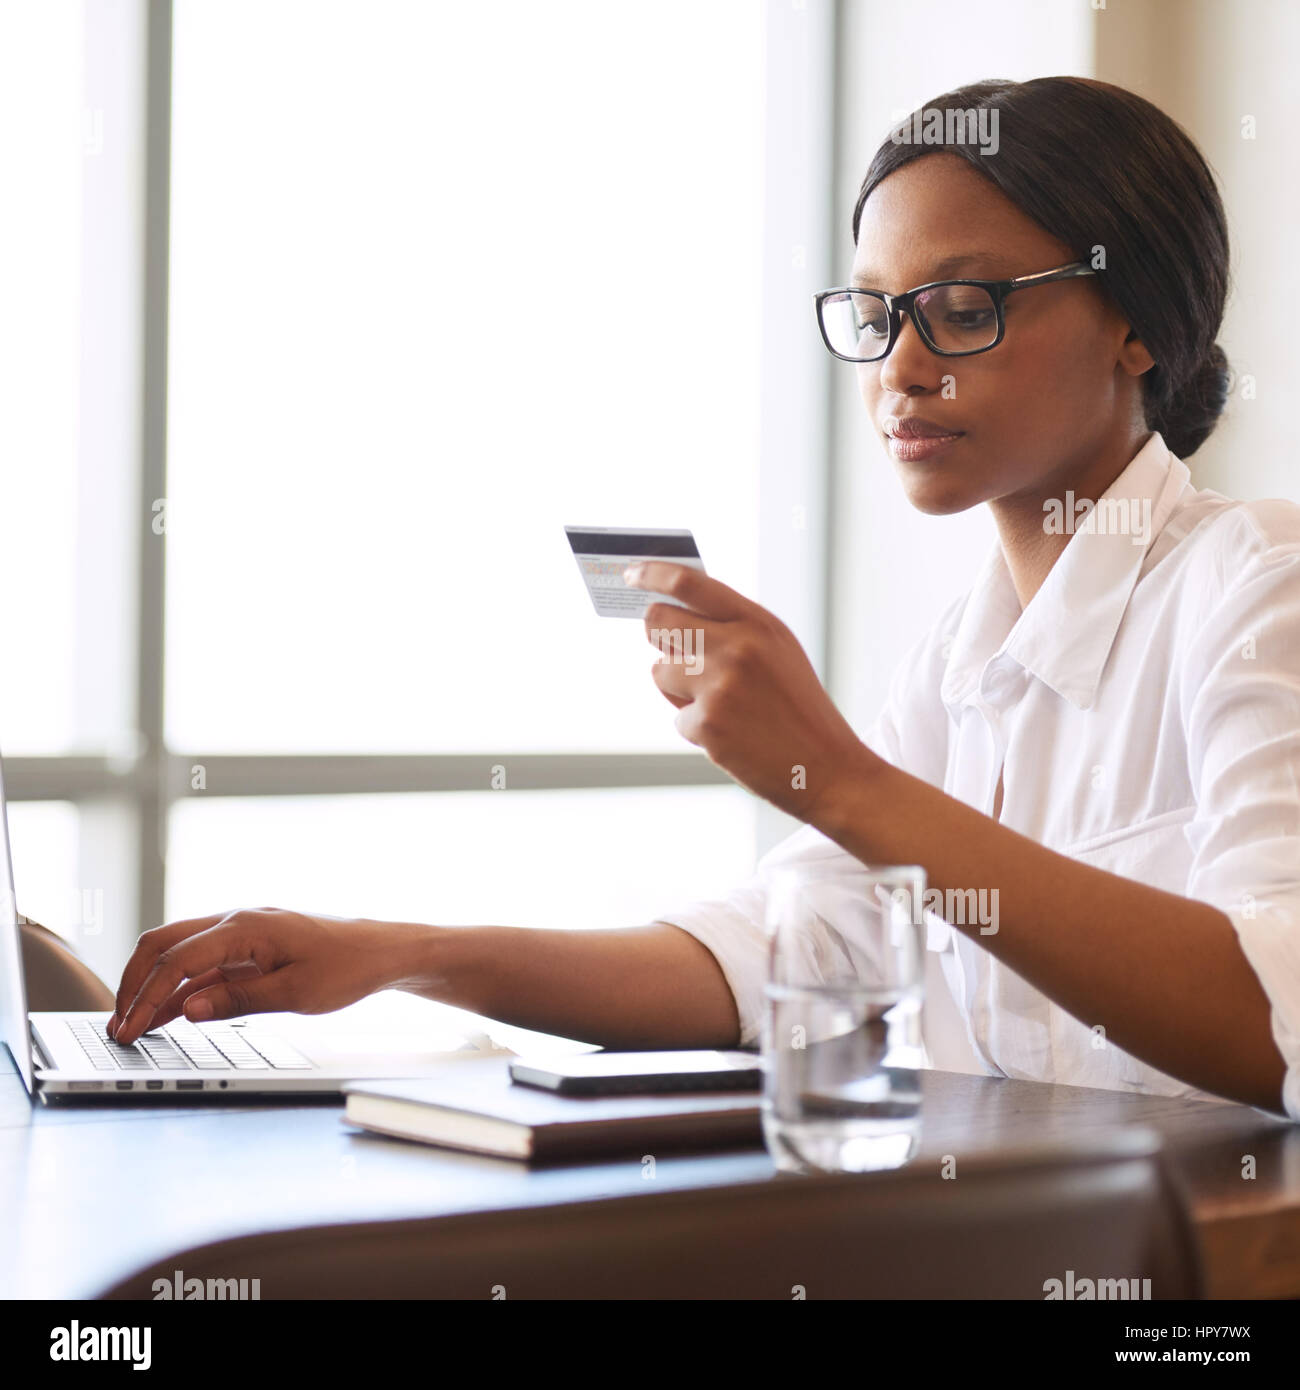 Imagen cuadrada de un bonito joven mujer negra ocupada la celebración de una tarjeta de crédito en una mano leyendo la información requerida y escribiendo en el pertinente di Foto de stock